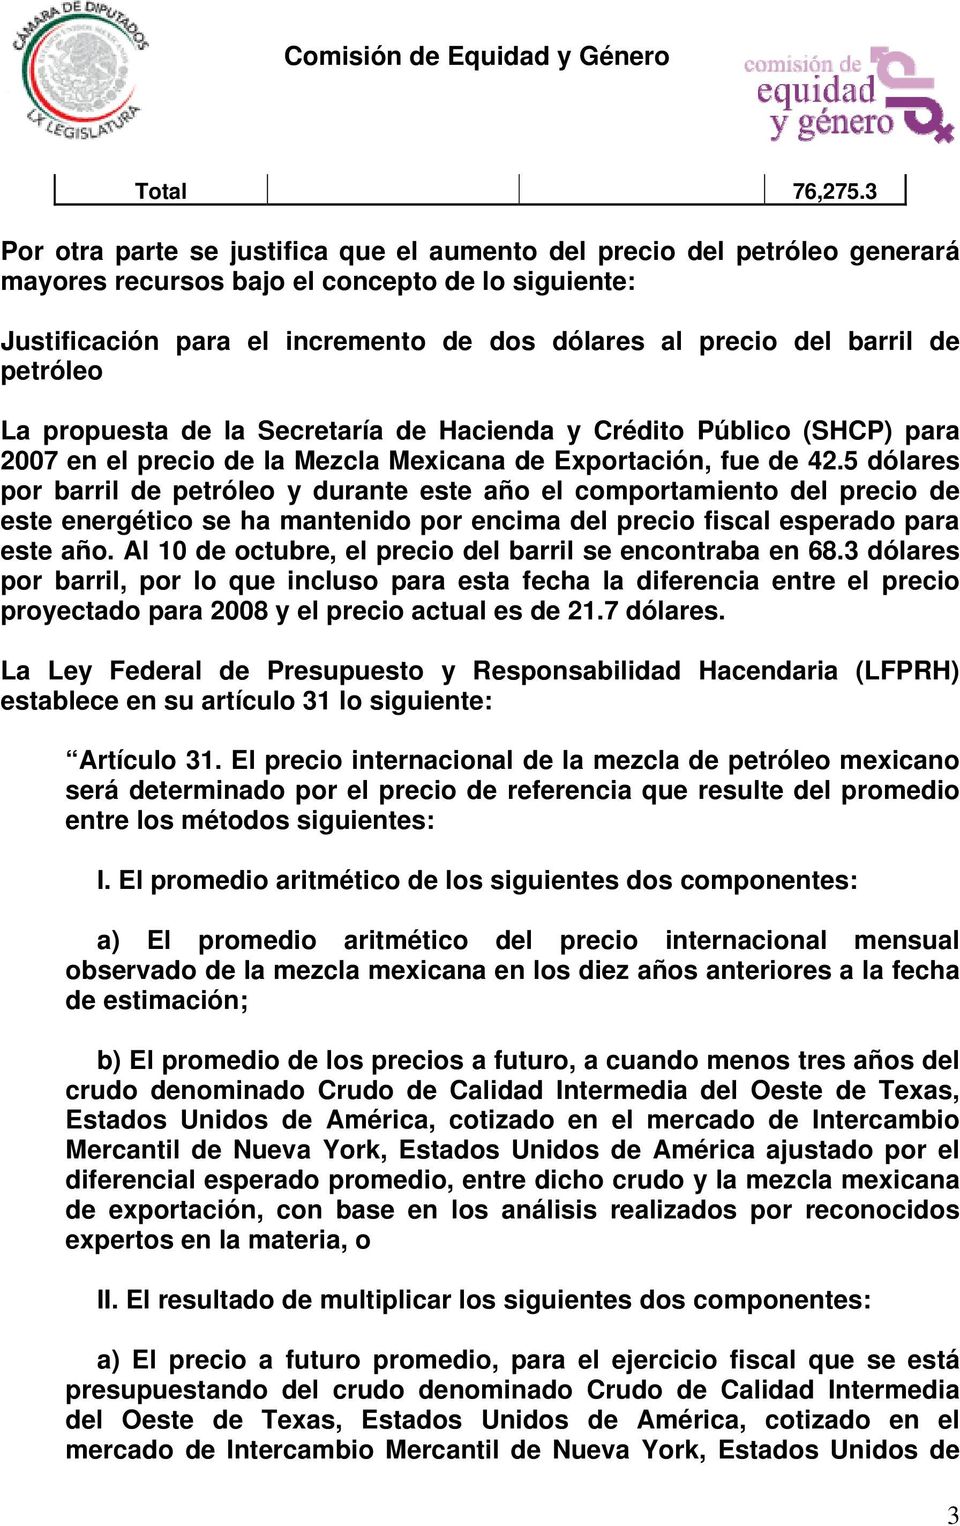 de petróleo La propuesta de la Secretaría de Hacienda y Crédito Público (SHCP) para 2007 en el precio de la Mezcla Mexicana de Exportación, fue de 42.